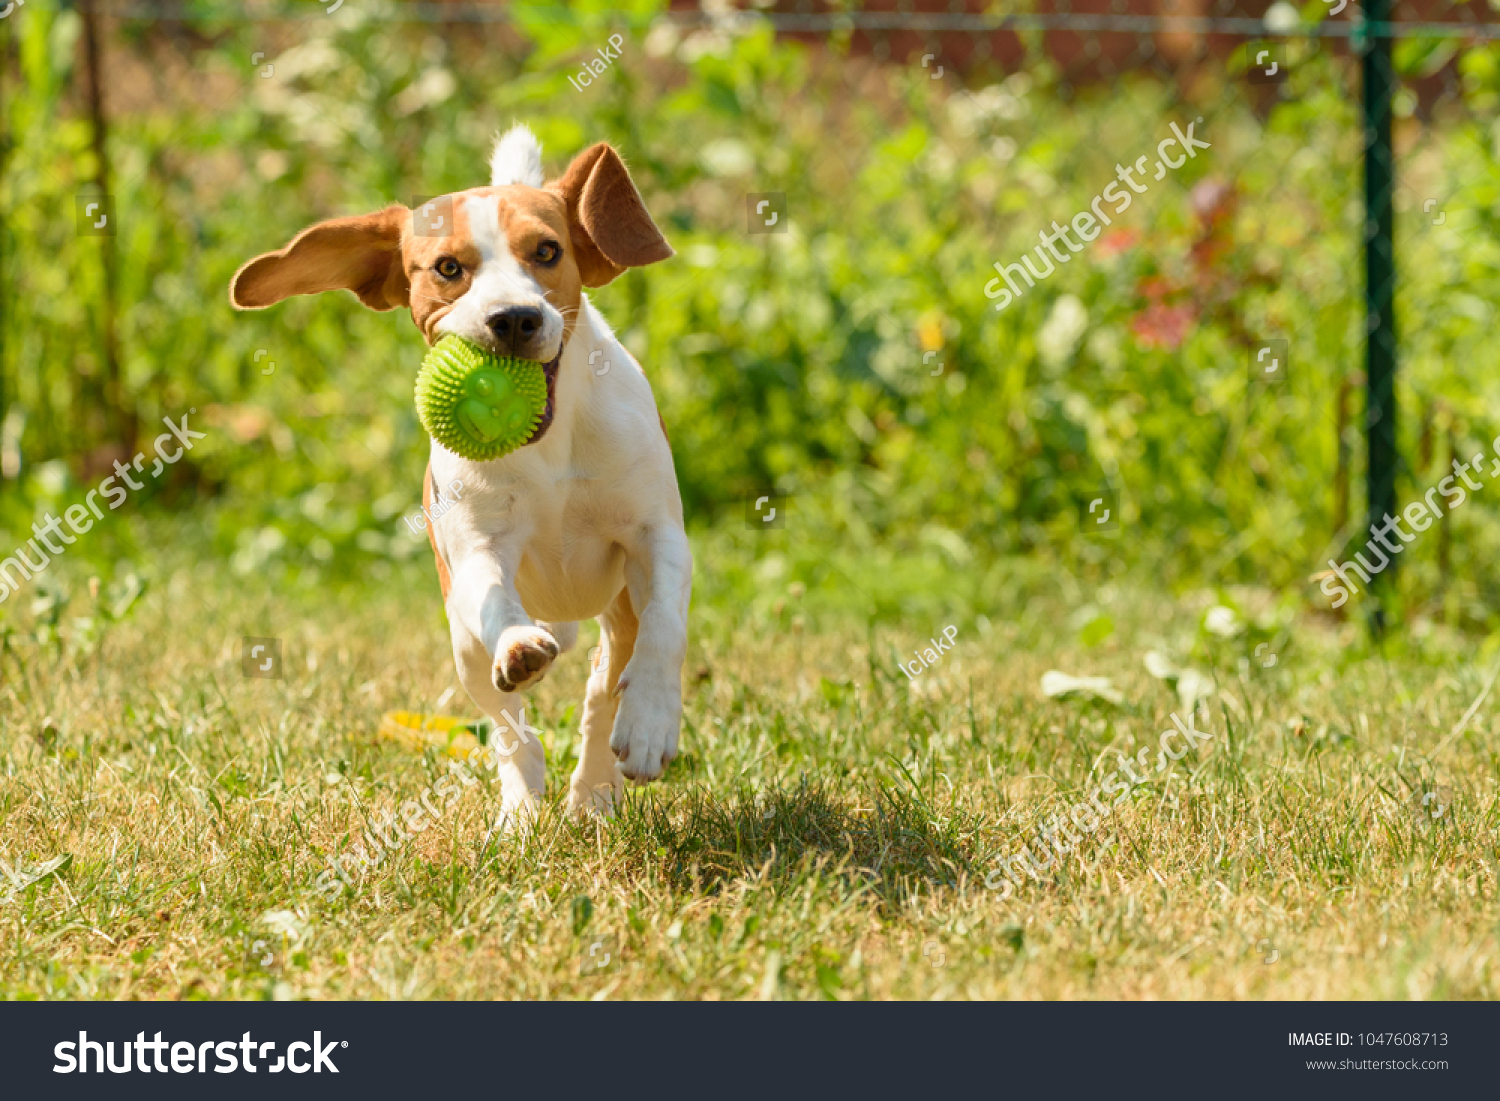 garden dog run